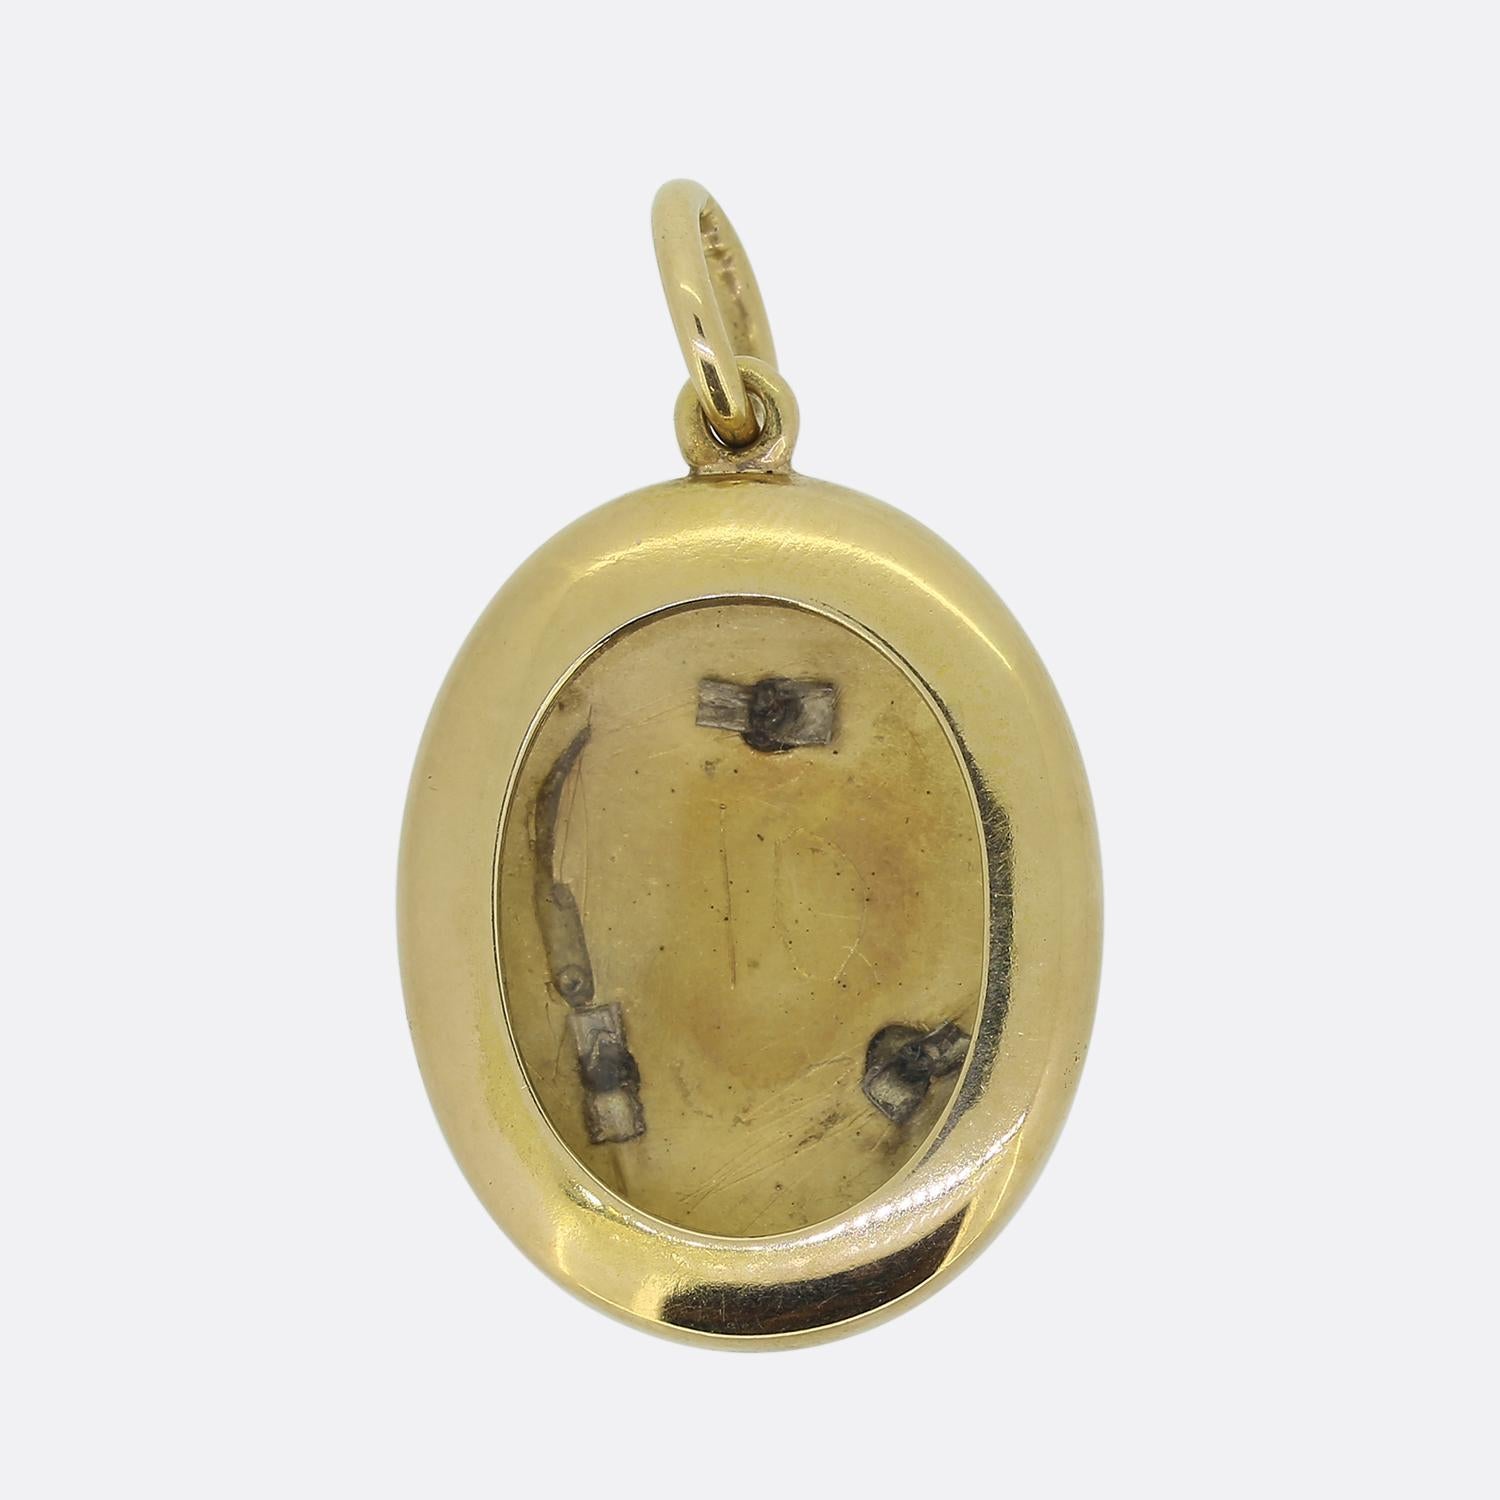 Nous avons ici un pendentif en or jaune 15ct datant de l'époque victorienne. Le pendentif présente un motif de fer à cheval formé de turquoise et de perles avec une bordure en émail bleu. Le médaillon a encore son dos, ce qui permet d'ajouter une